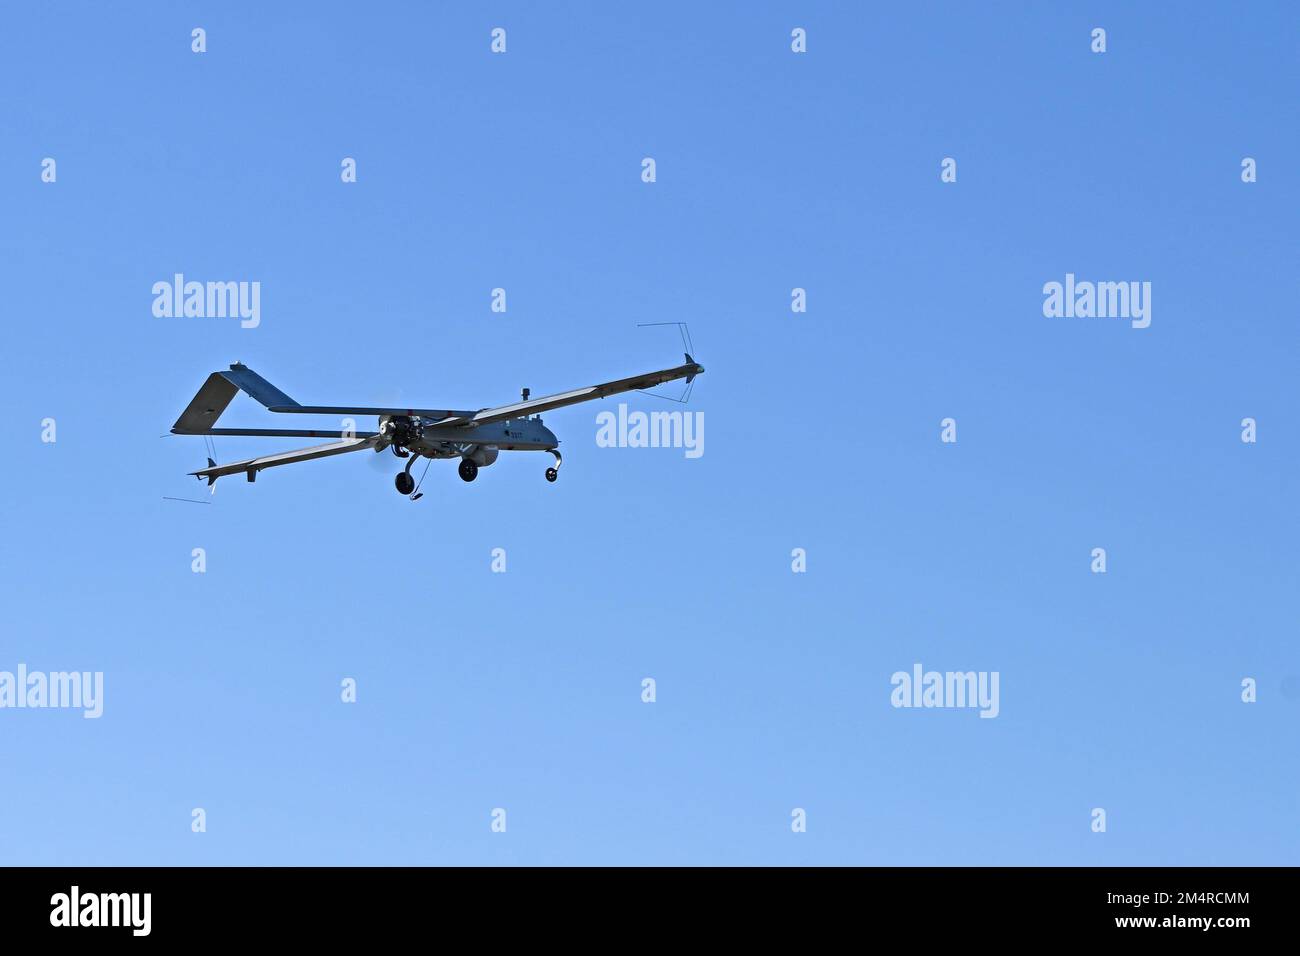 Die Soldaten des 1. DET / 104. BEB (BRIGADE eng BATTALLION) schließen die Tests der unbemannten SCHATTEN-t-UAS-Drohne ab. Diese 12 Meter lange Drohne mit einer Tragweite von 22 Metern ist eine Drohne mit Treibstoffbasis, die Fotos und Videos an einen Basispunkt zurückgeben kann. Der SCHATTEN wird von einem auf einem Anhänger montierten pneumatischen Katapult abgefeuert und mit Hilfe von Auffangvorrichtungen, ähnlich wie Düsen auf einem Flugzeugträger, geborgen. Seine kardanmontierte, digital stabilisierte, mit Flüssigstickstoff gekühlte, elektrooptische/Infrarot-Kamera (EO/IR) überträgt Videos in Echtzeit über eine C-Band-Sichtverbindung zur Bodenkontrollstation (GCS) Stockfoto